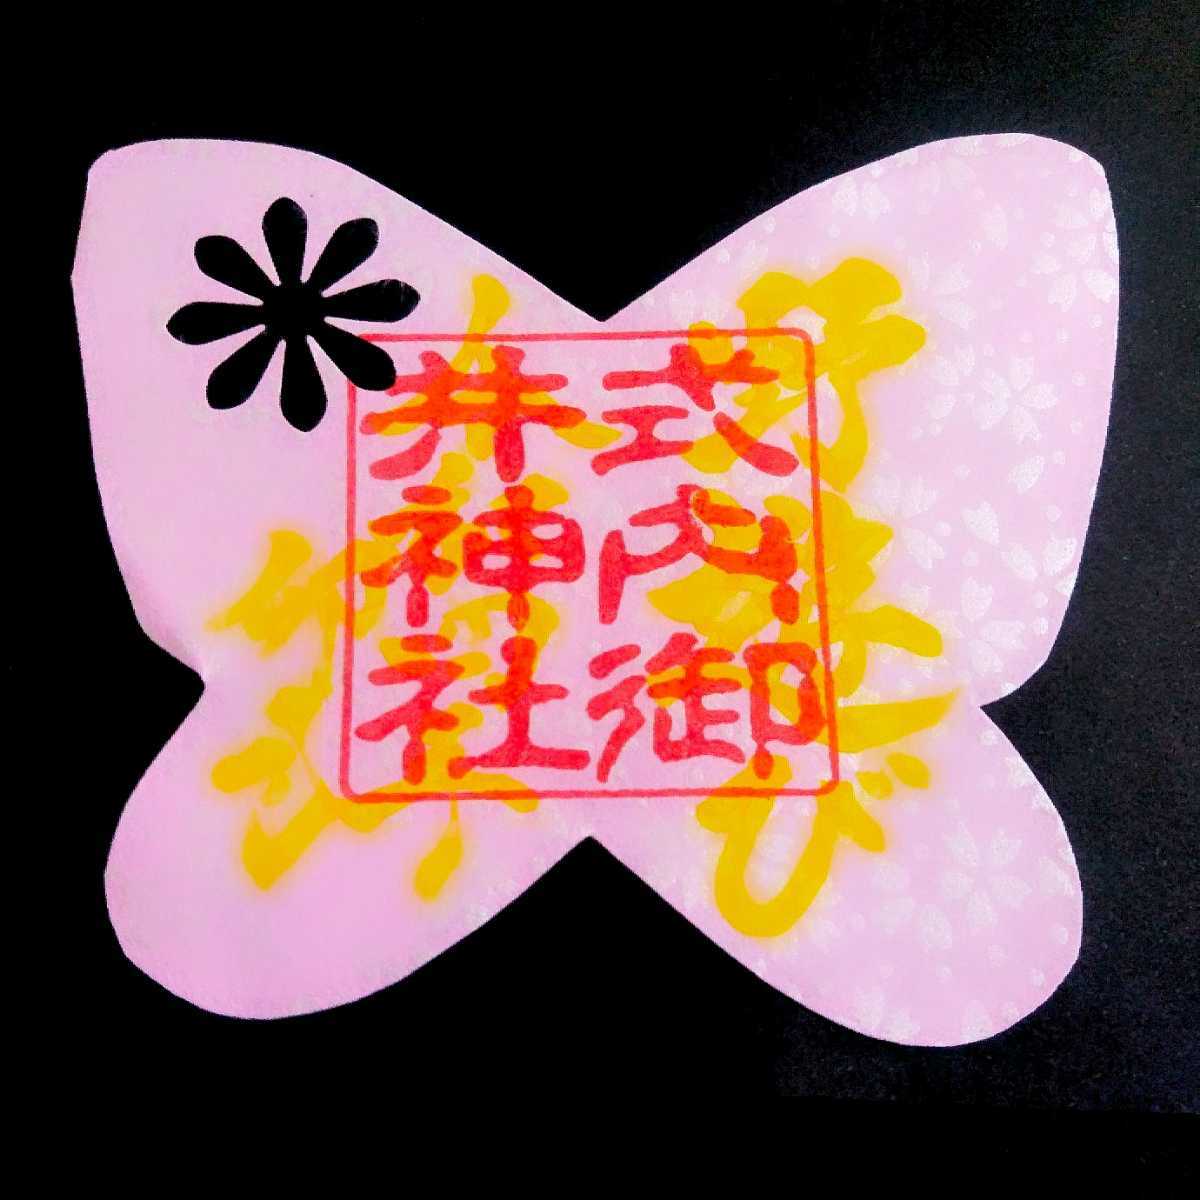 [SALE]{ катануки * бабочка комплект }[ Gifu .. бог фирма ( ограничение .. печать )] тканый рисовое поле доверие превосходящий : три . замок :amabie: Sakura : цветок видеть : цветок ...:...